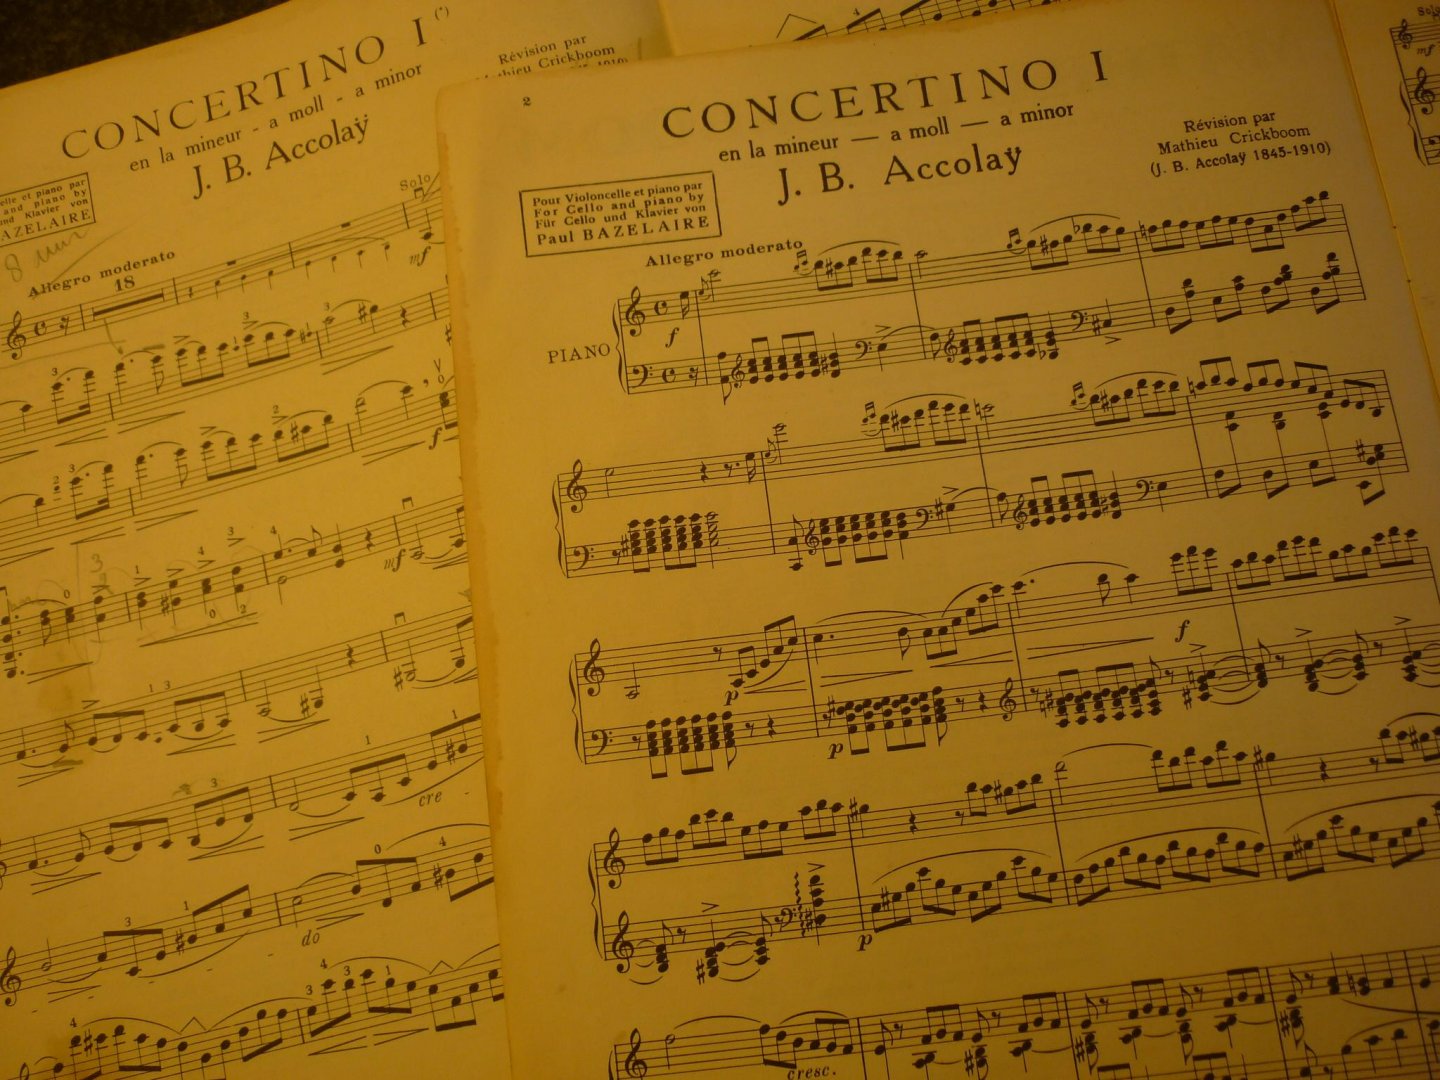 Accolay; Jean-Baptiste - Concertino Nr. 1 la mineur - a minor - a moll; voor: Viool, piano